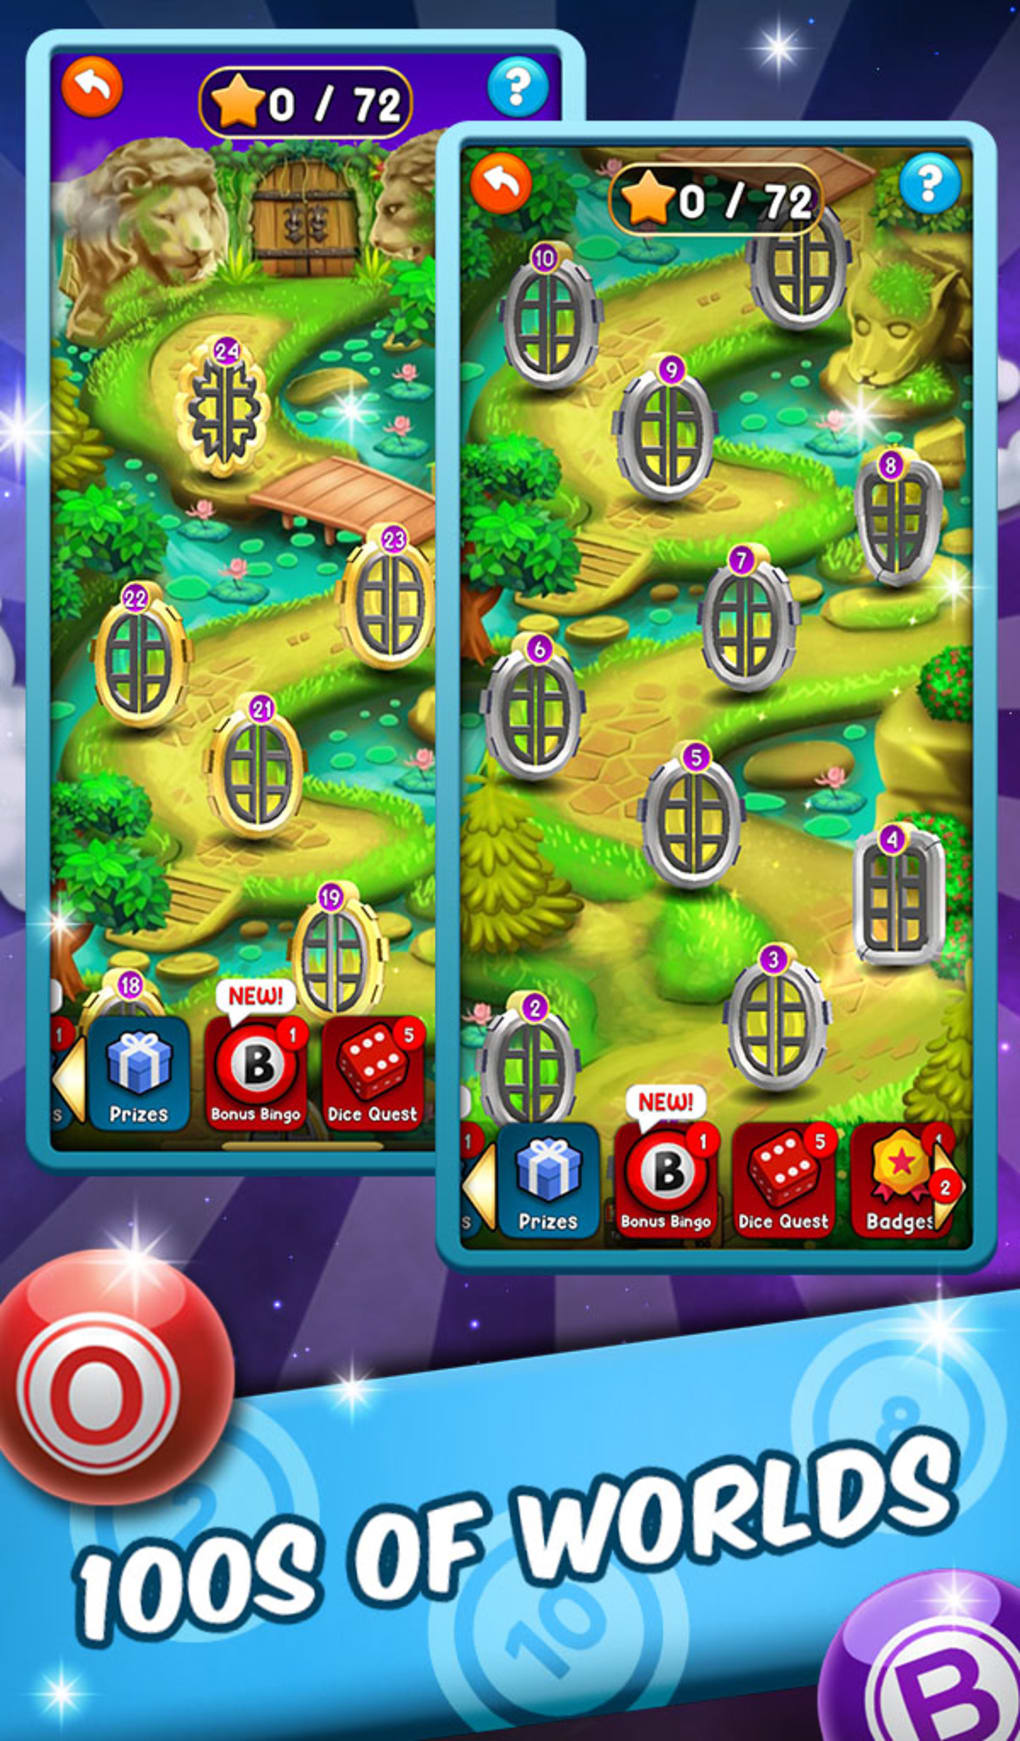 App Legendary Slots PAGA MESMO 20 Reais? (TUDO SOBRE Legendary